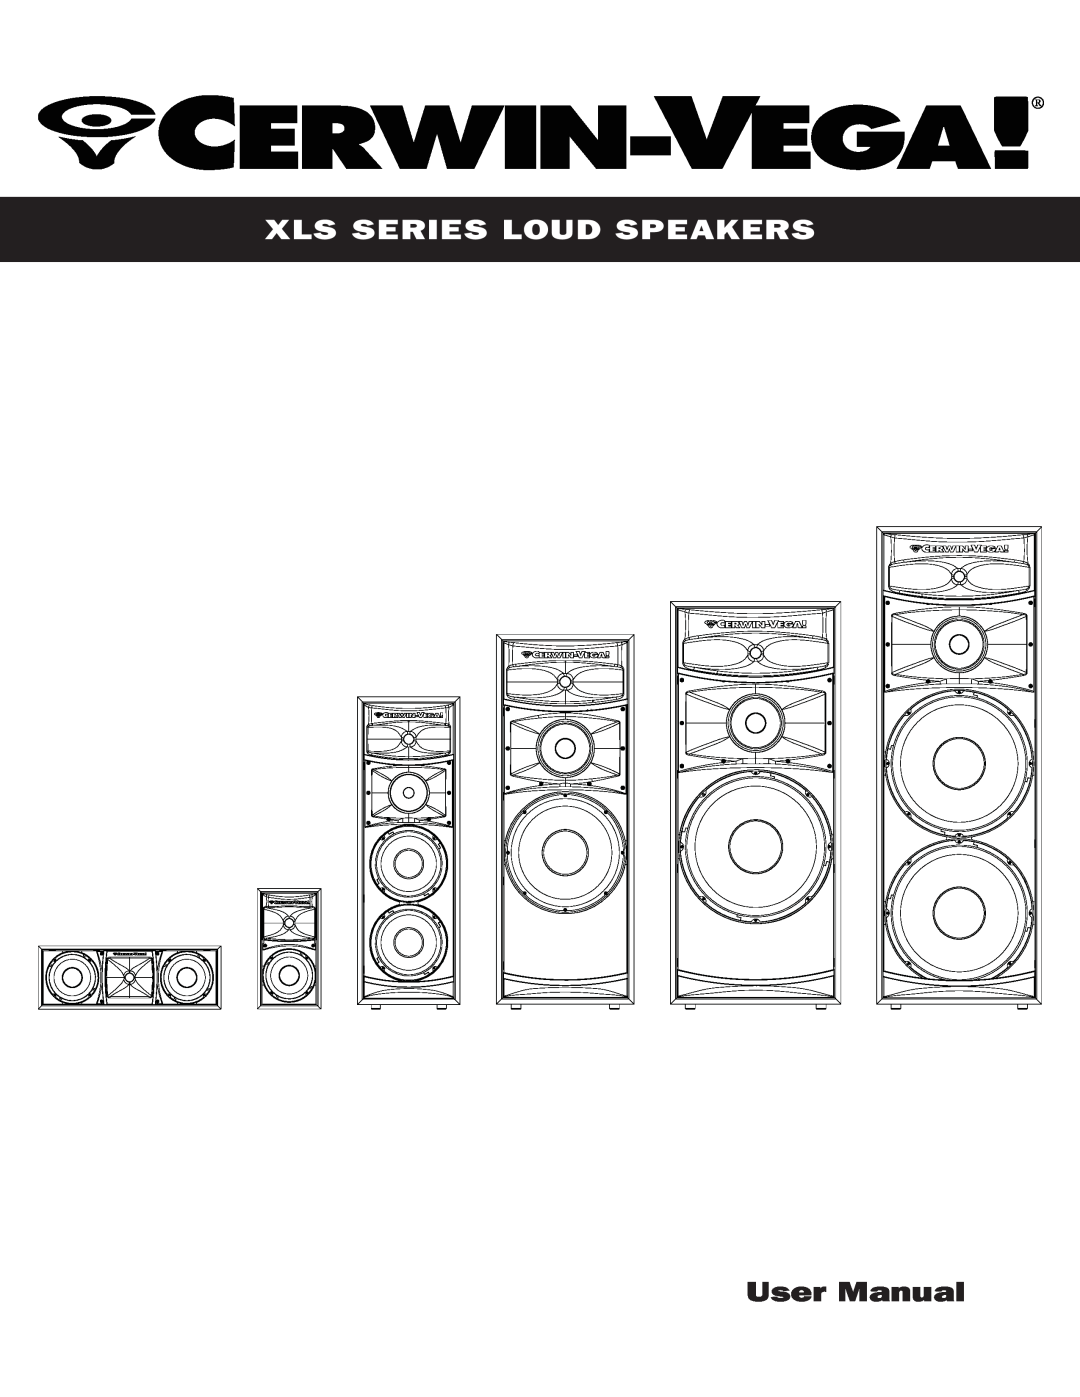 Cerwin-Vega XLS user manual Xls Series Loud Speakers 